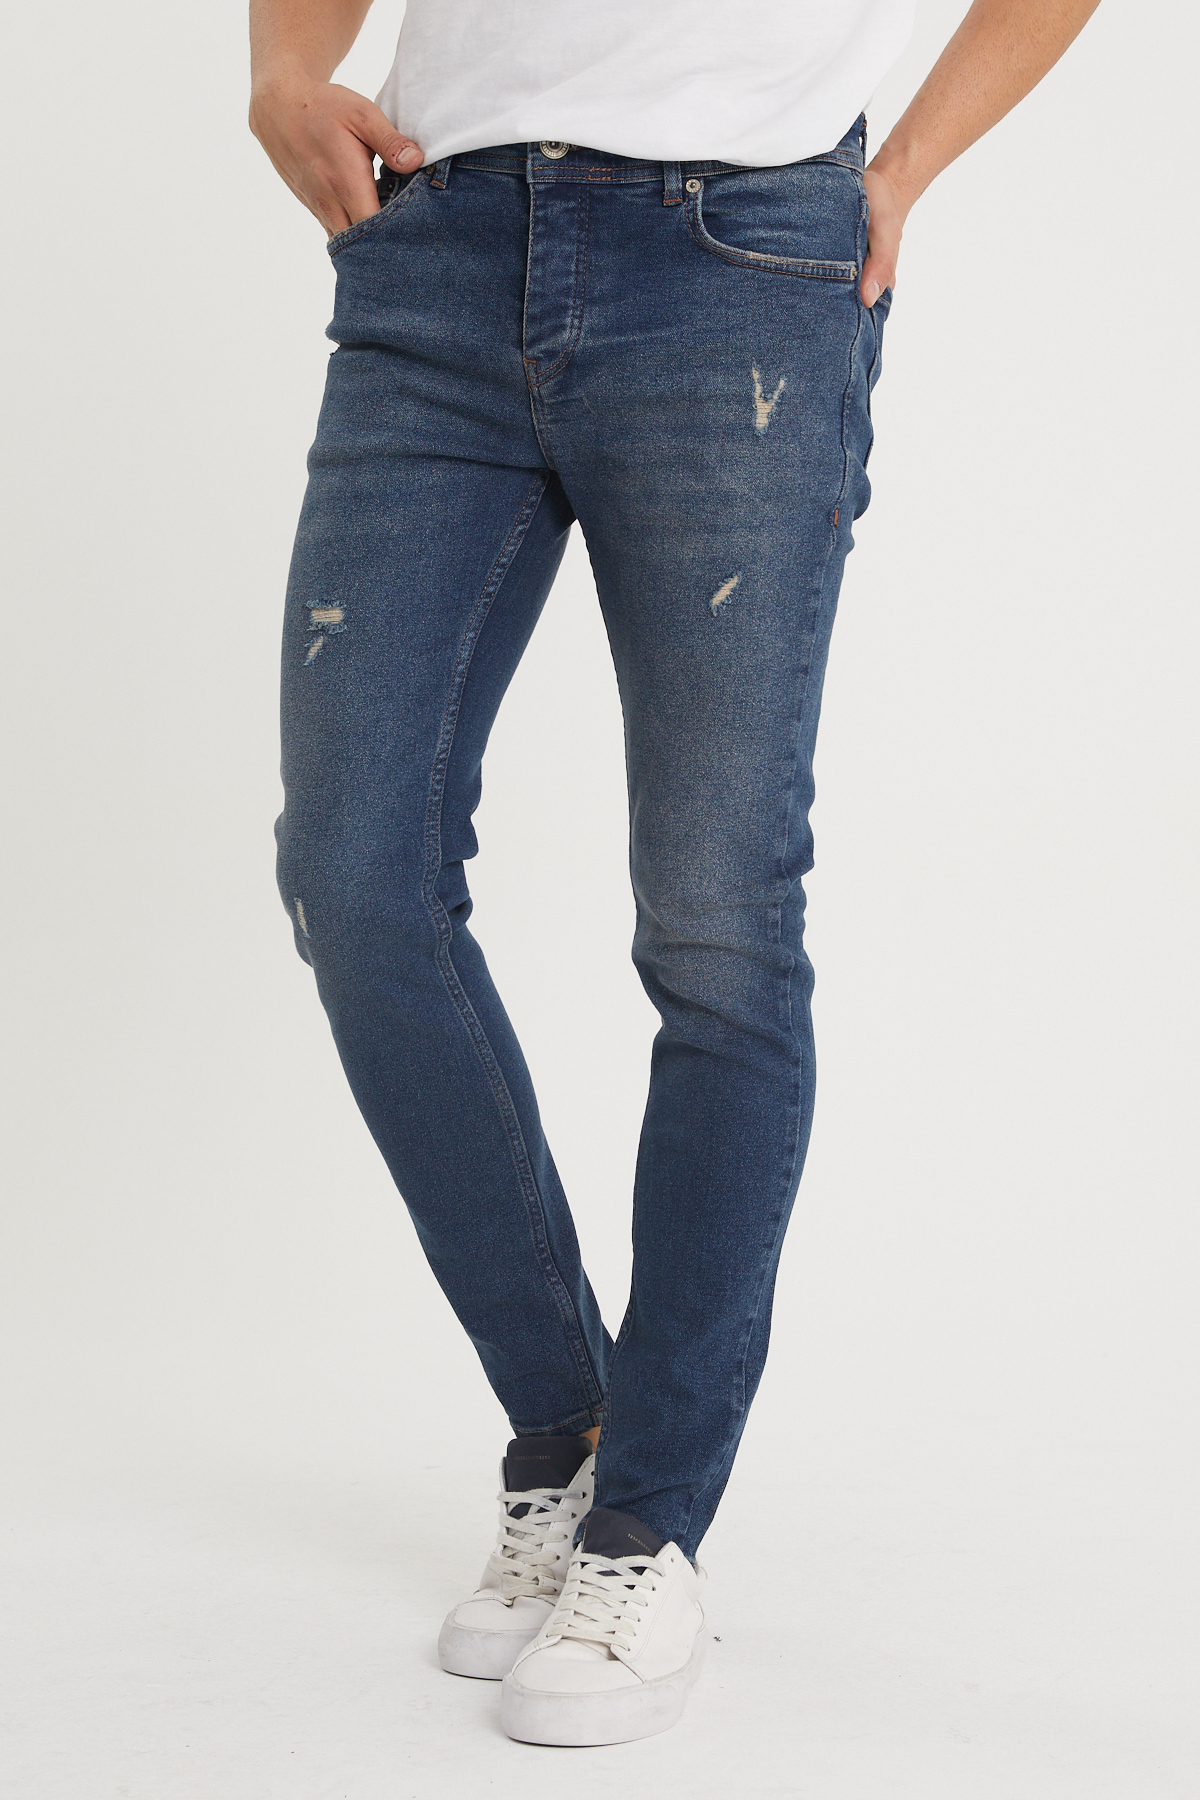 Yıkamalı Lacivert Slim Fit Jean Pantolon 1KXE5-44352-48 